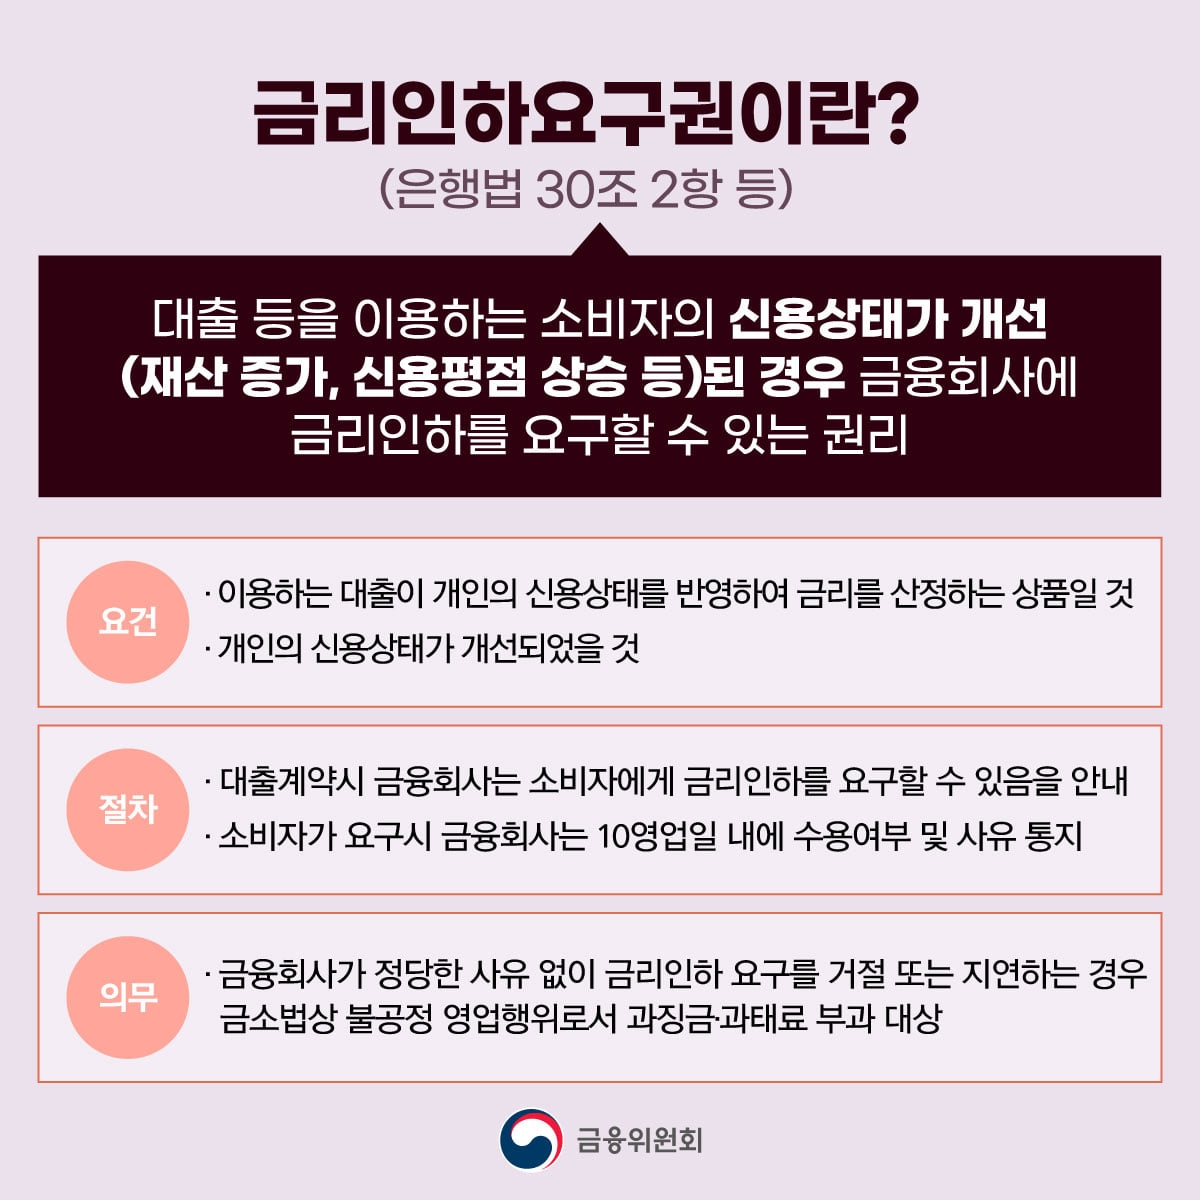 금리인하요구권의 요건과 절차./자료제공=금융위원회